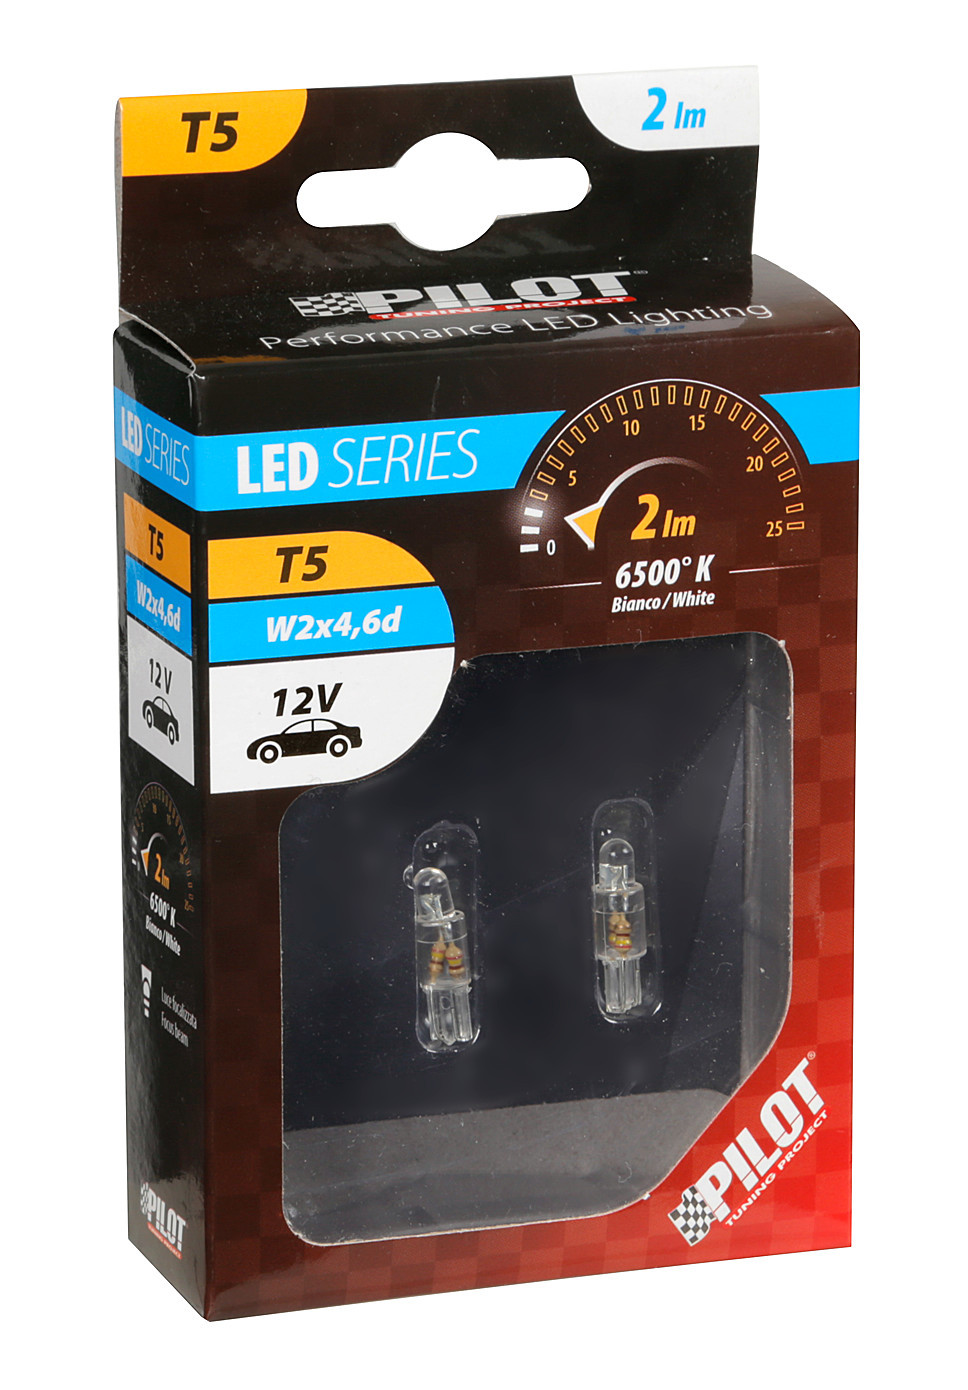 12V Micro lamp wedge base 1 Led - (T5) - W2x4,6d - 2 pcs - White thumb